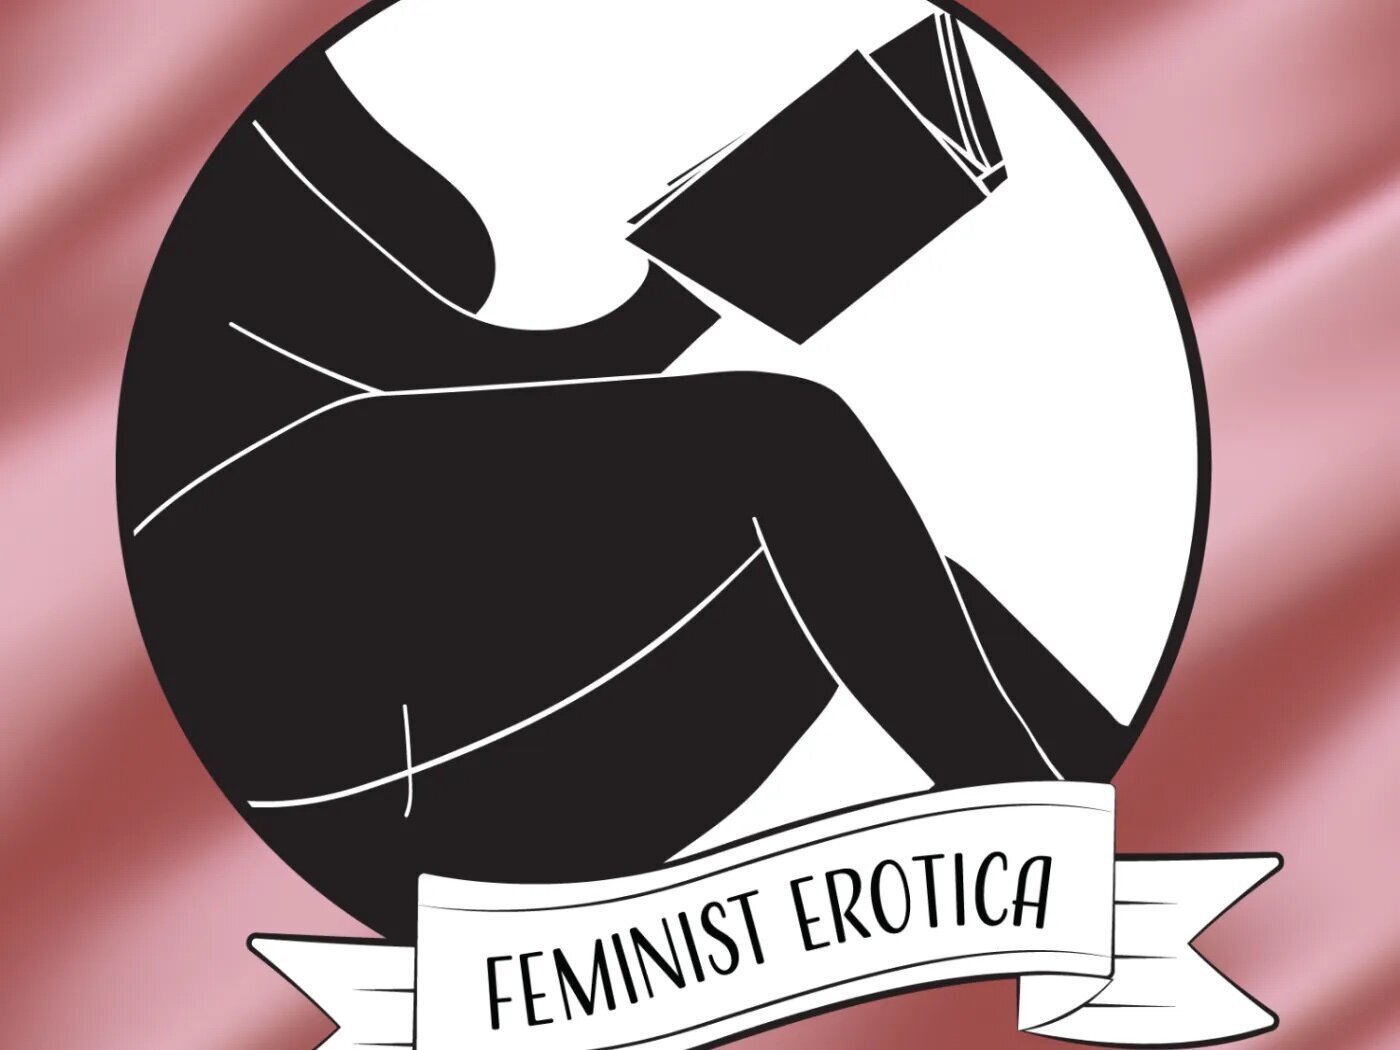 Feminist Erotica Podcast